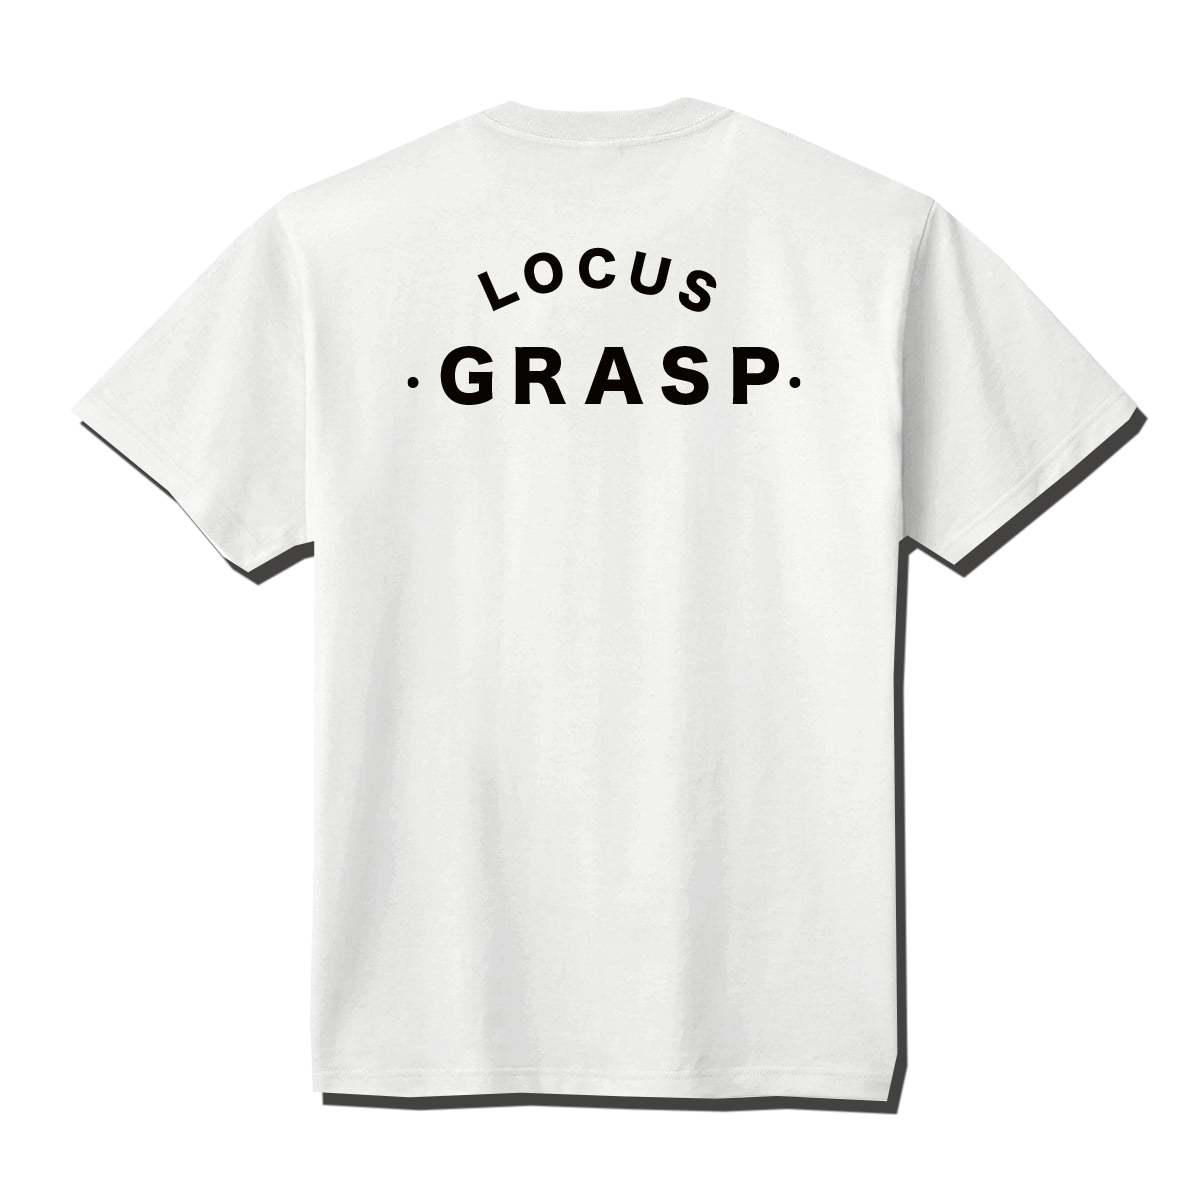 T-shirt .grasp.